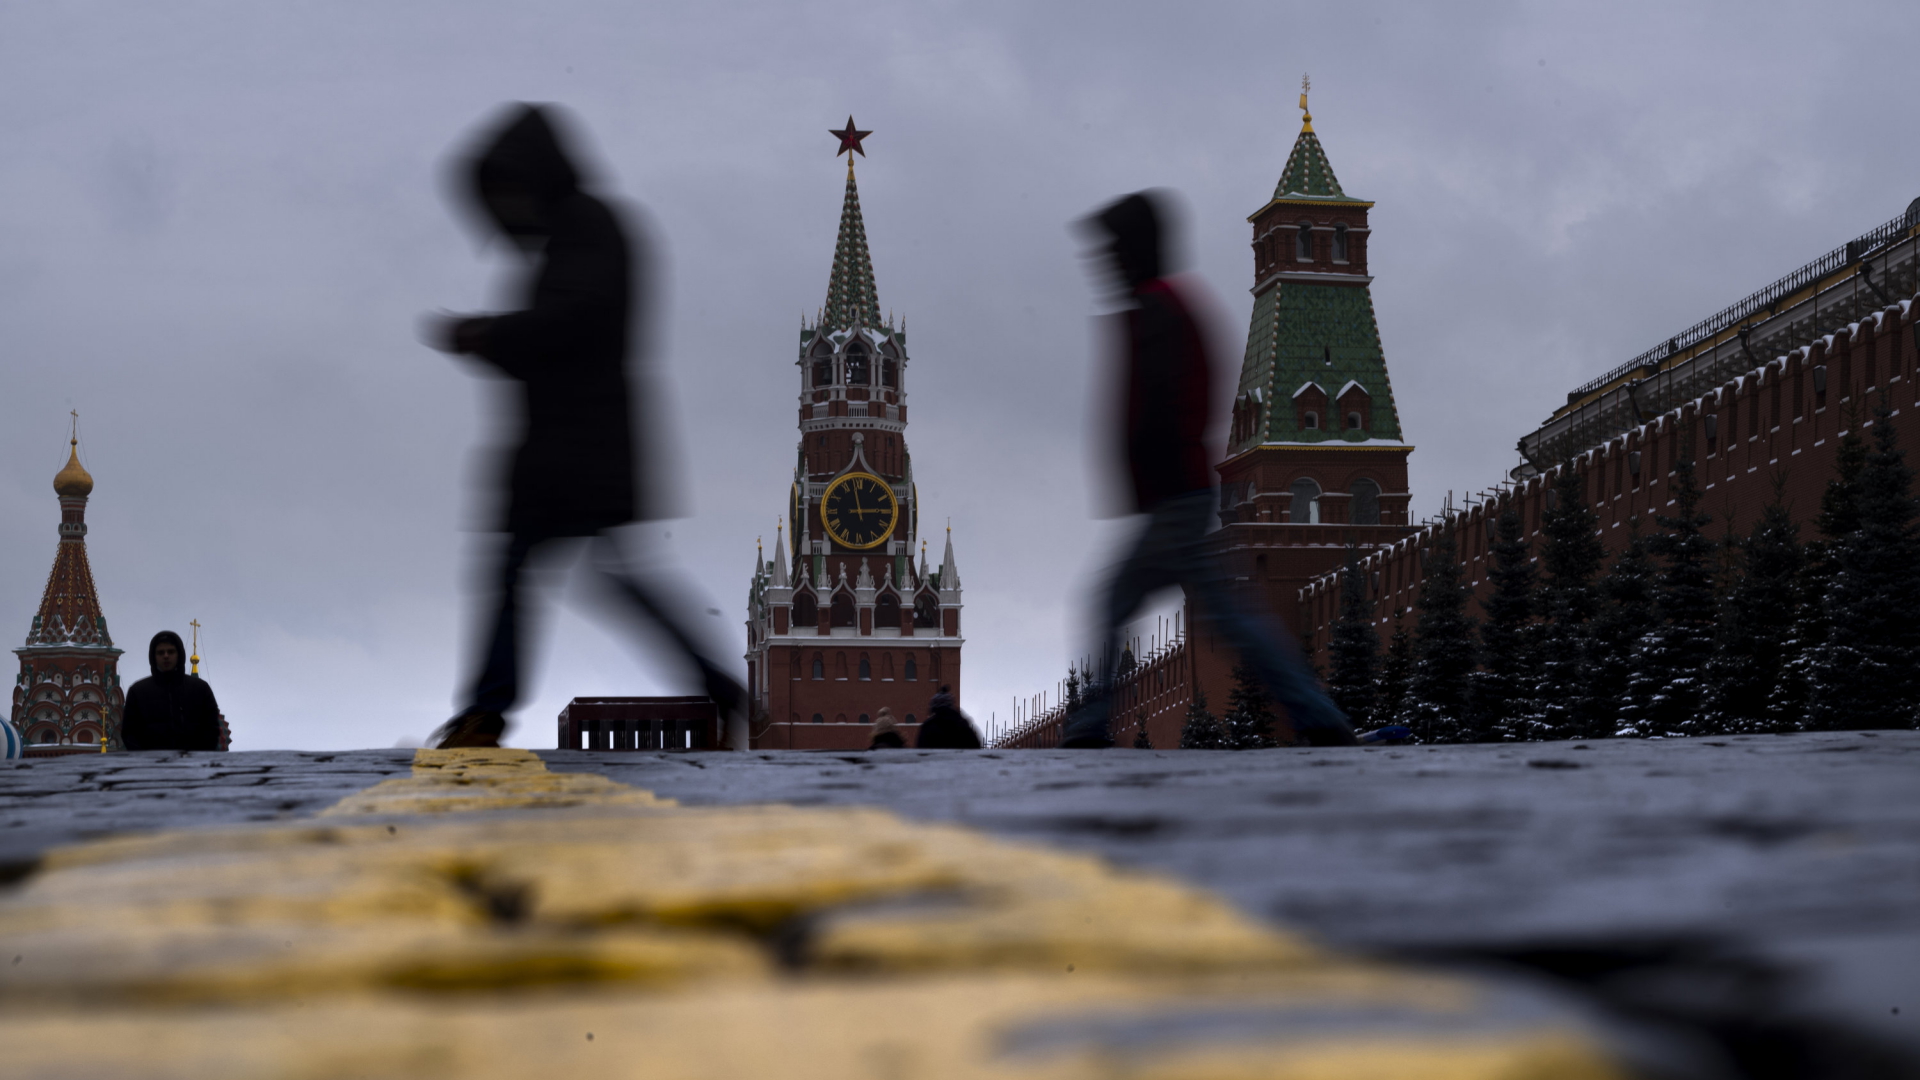 Tausende Firmen in Europa haben russische Eigentümer